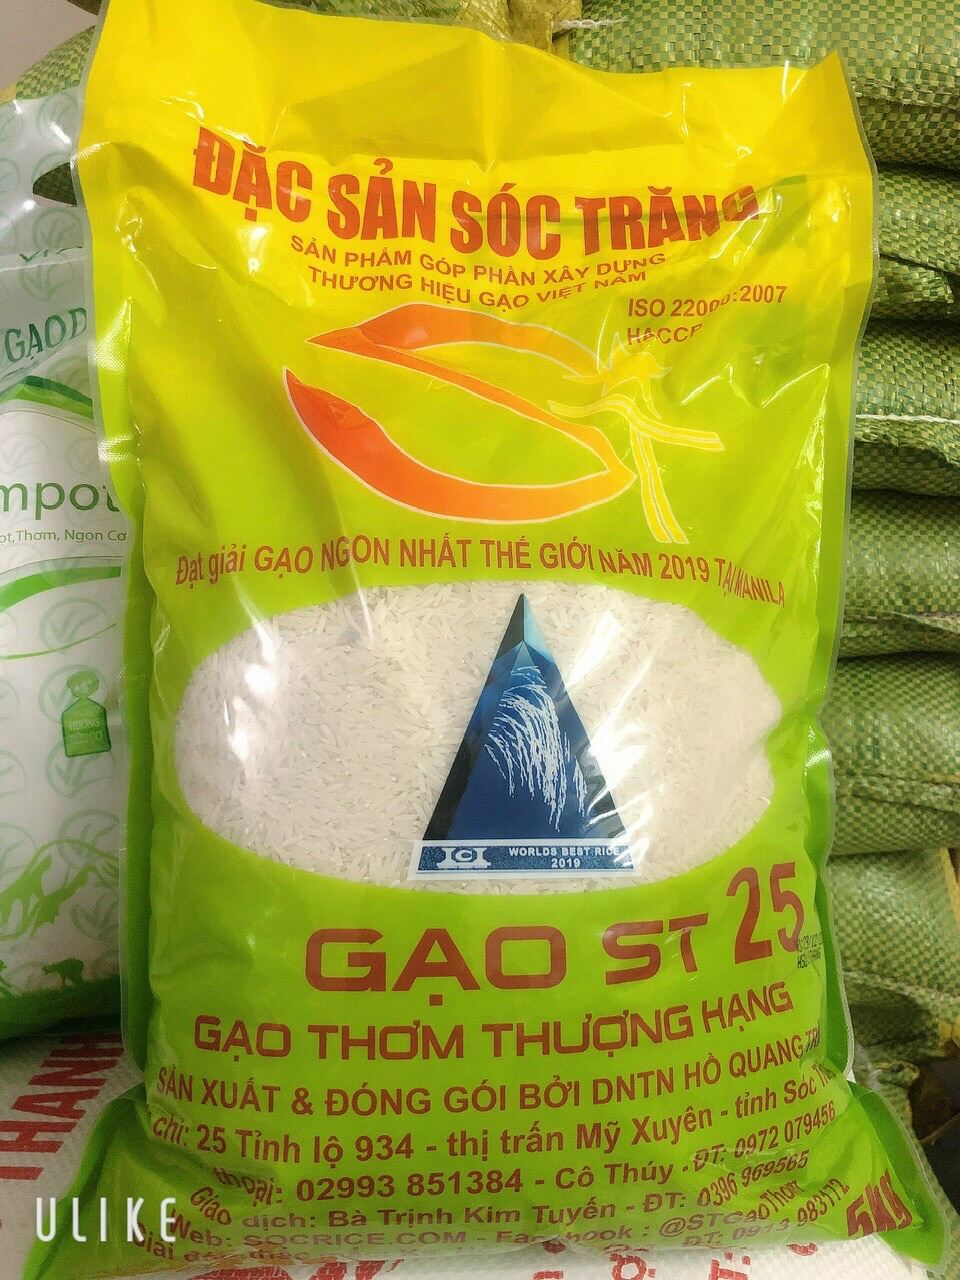 Gạo ST 25 dẻo mềm ngọt cơm, gạo chính hãng của KS Hồ Quang Của. Loại bao 5 kg